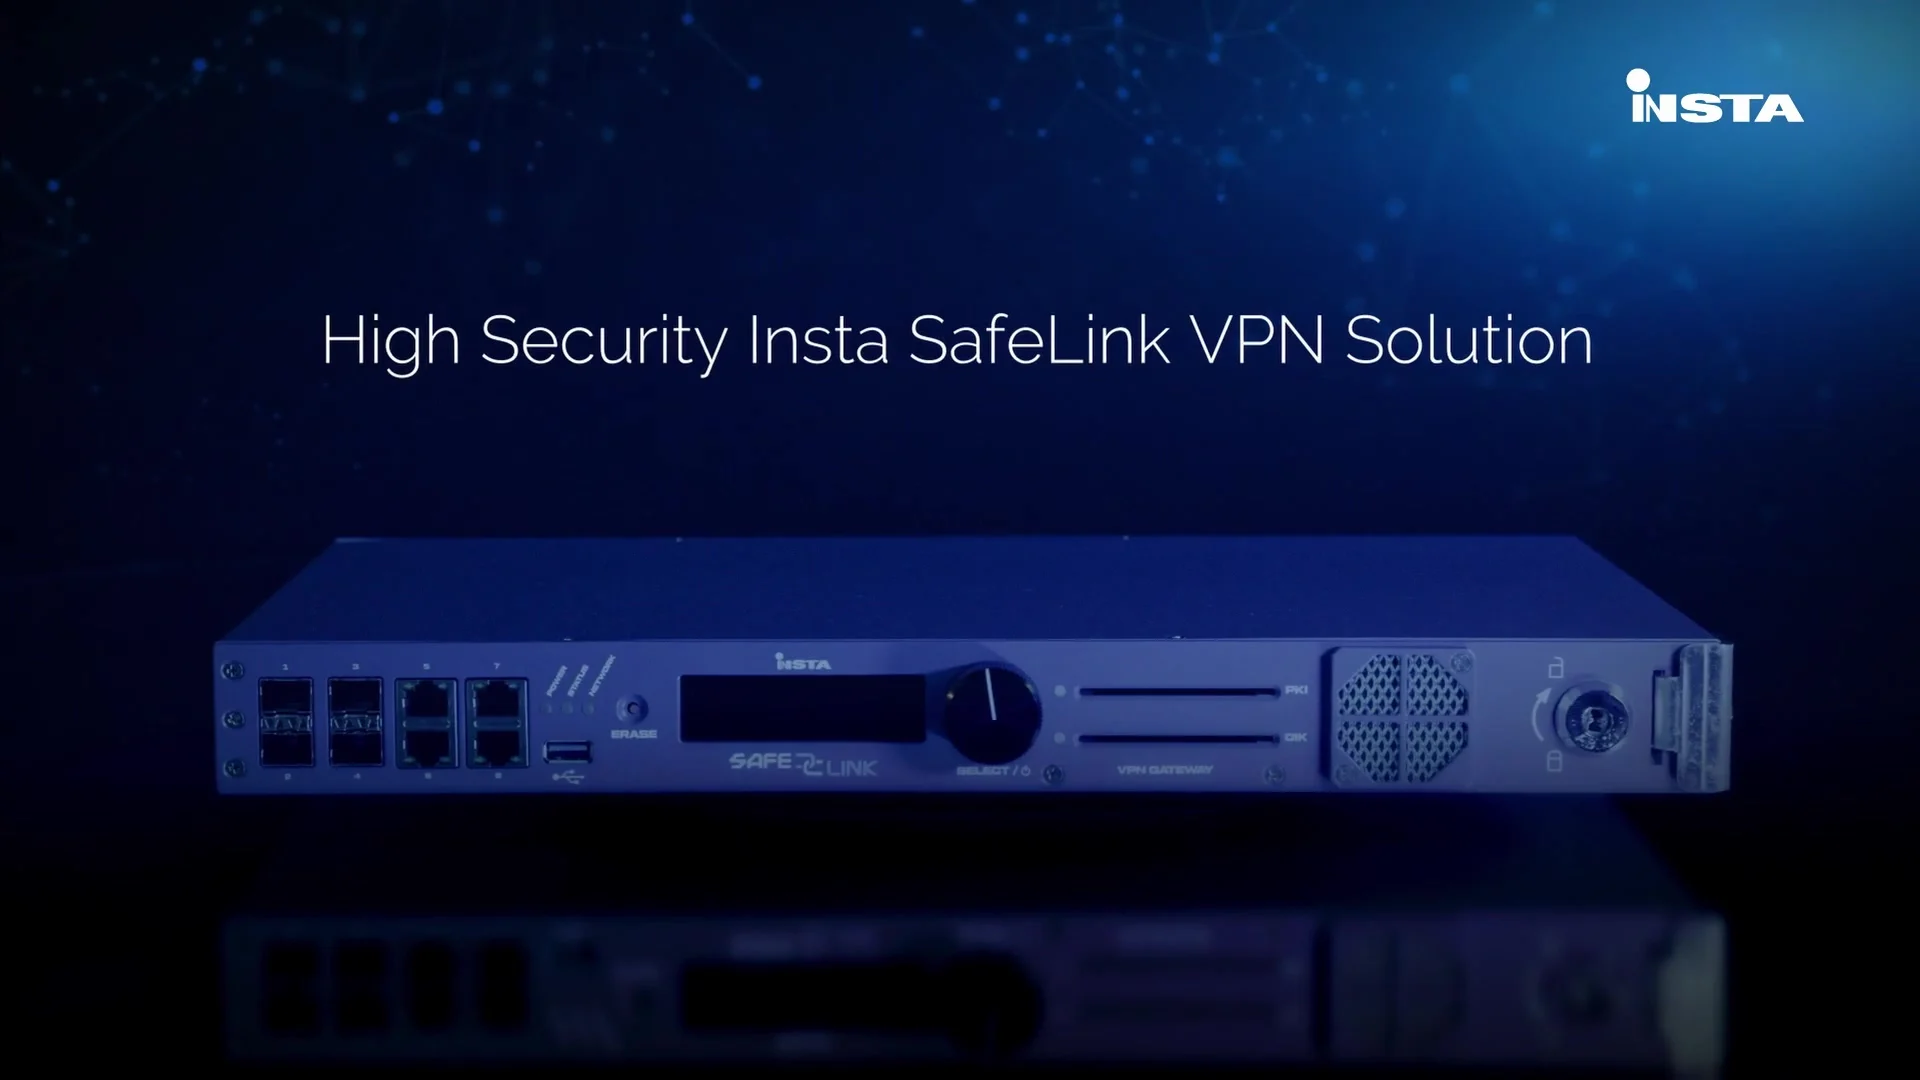 High Security Insta SafeLink VPN Solution